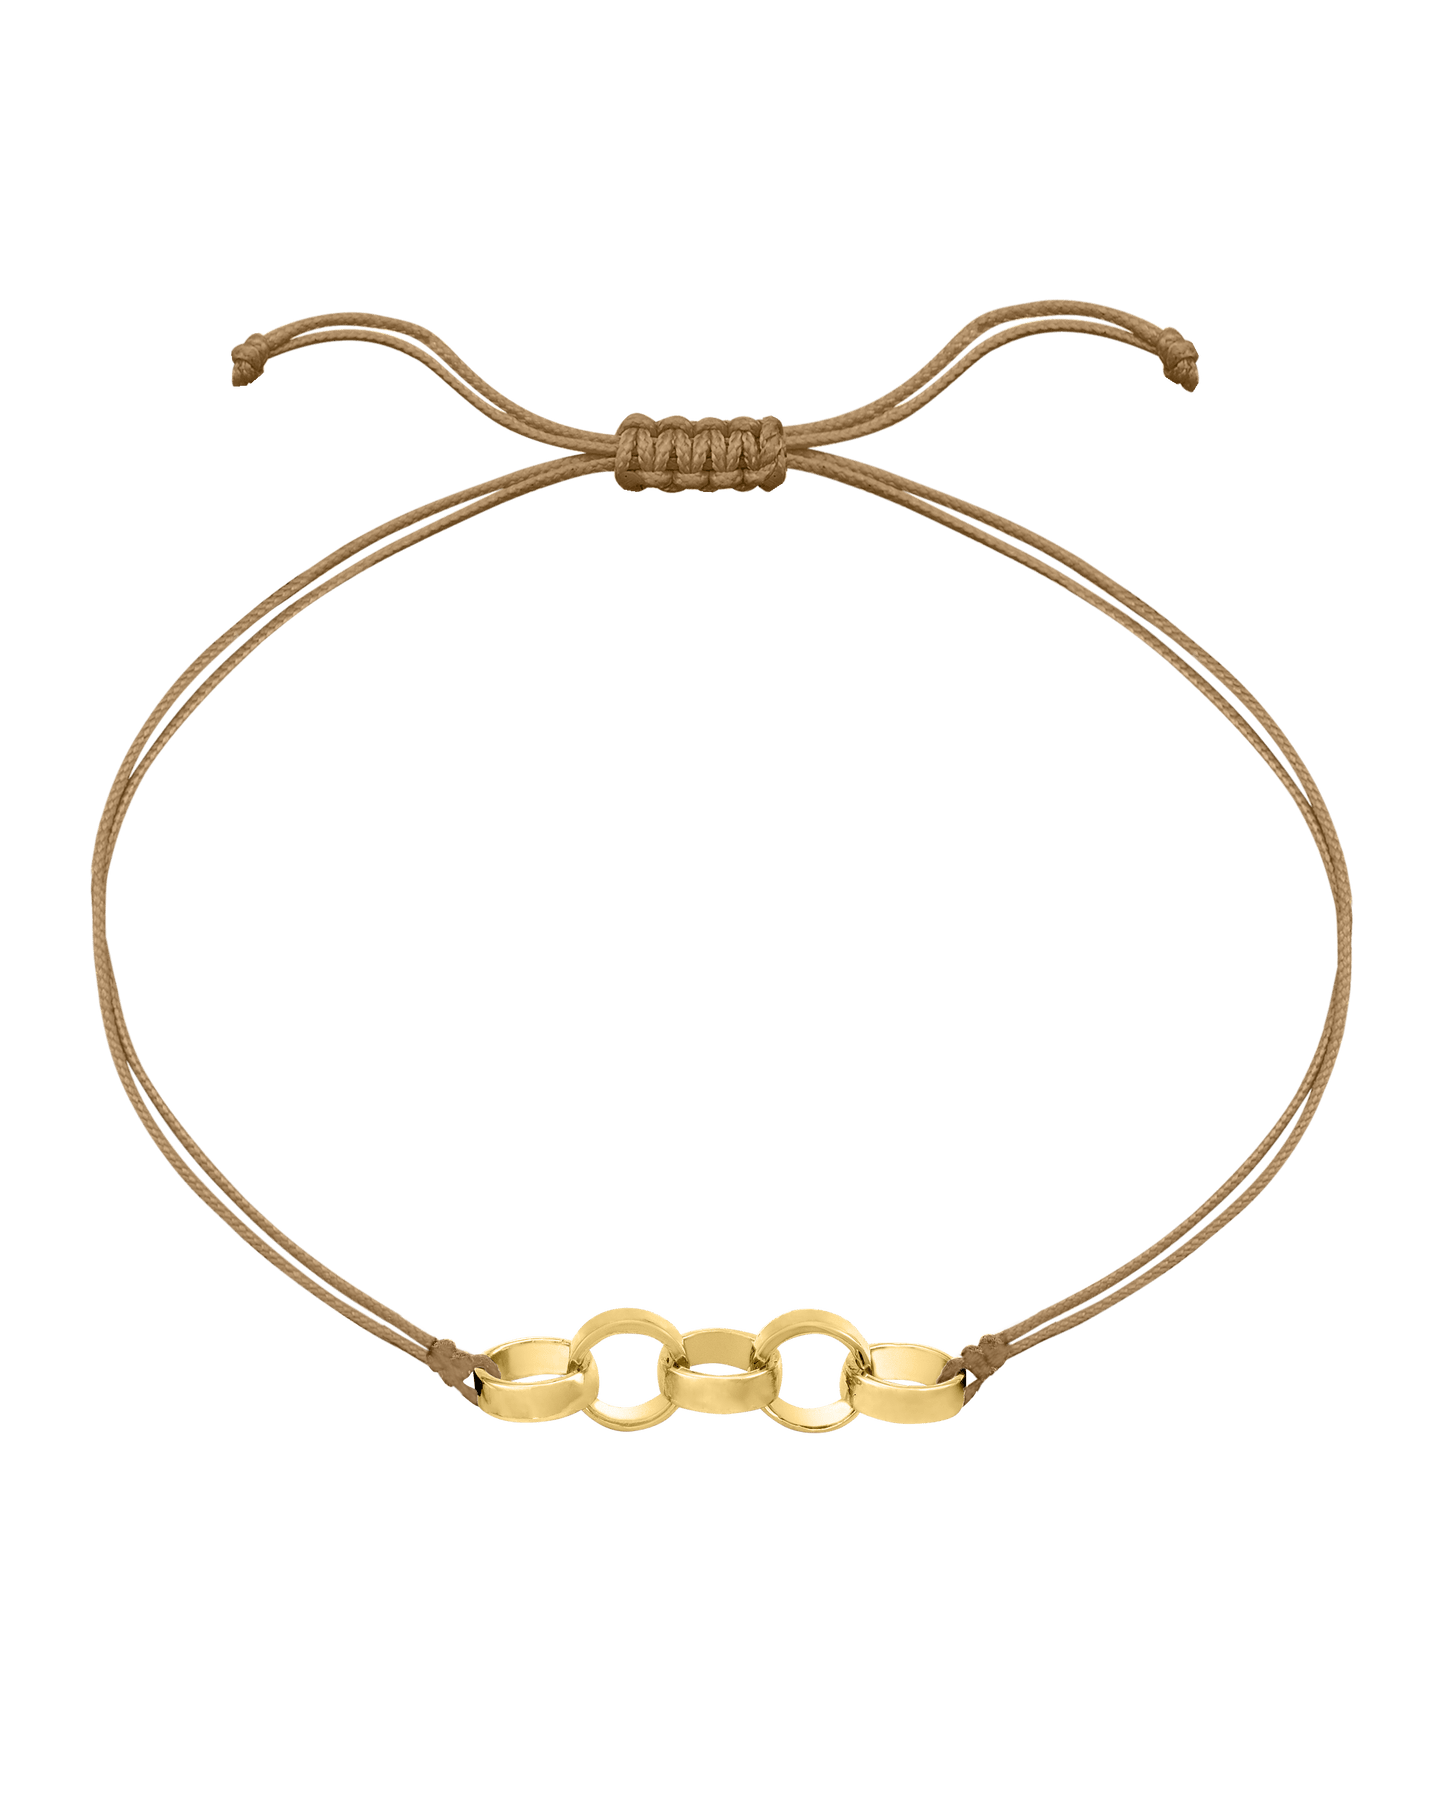 Engravable Links of Love - 18K Gold Vermeil Bracelets magal-dev 5 Camel 